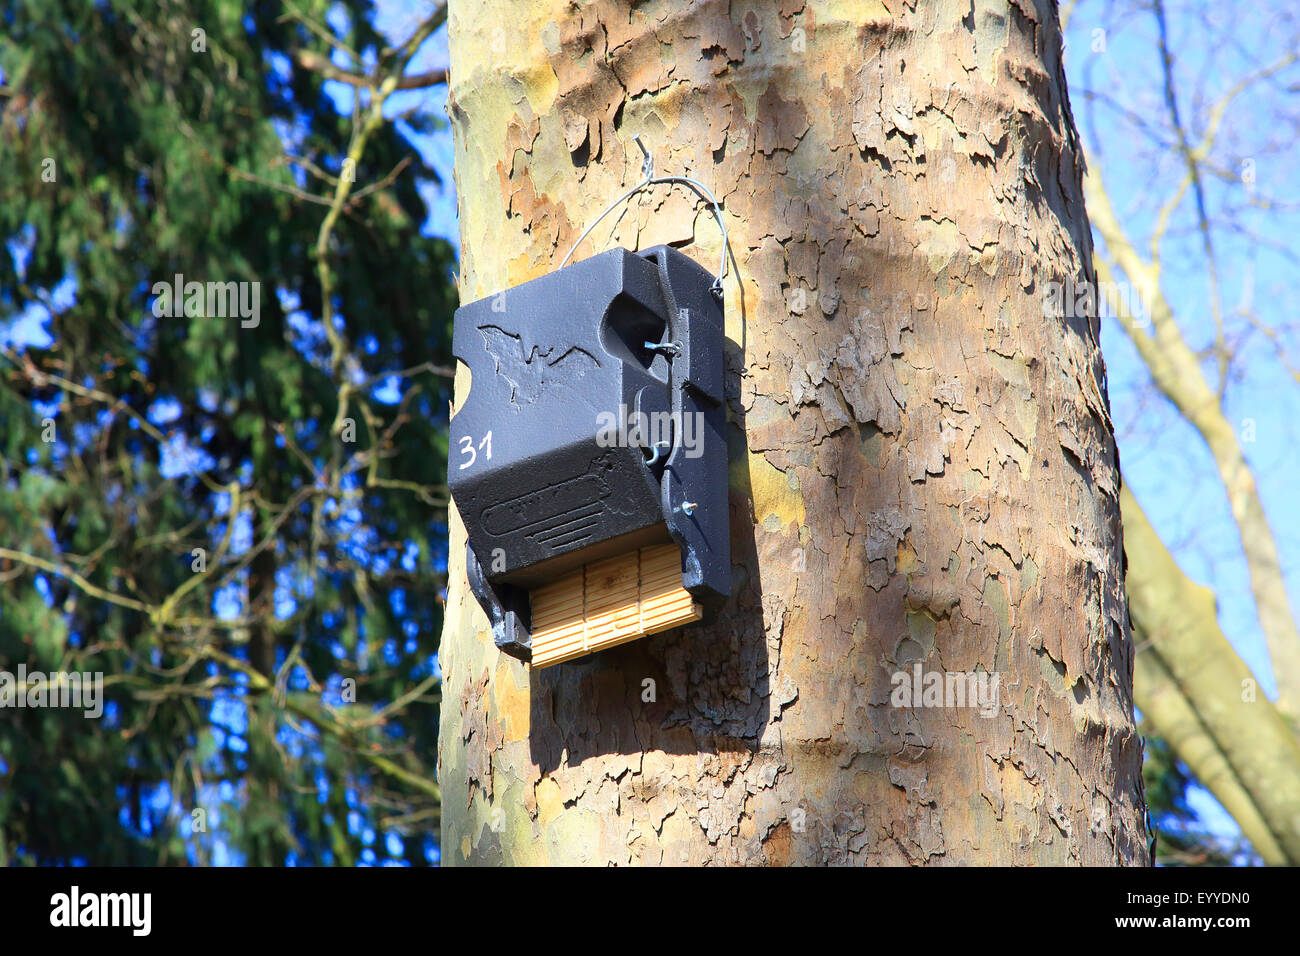 Bat house in corrispondenza di un albero, Germania Foto Stock